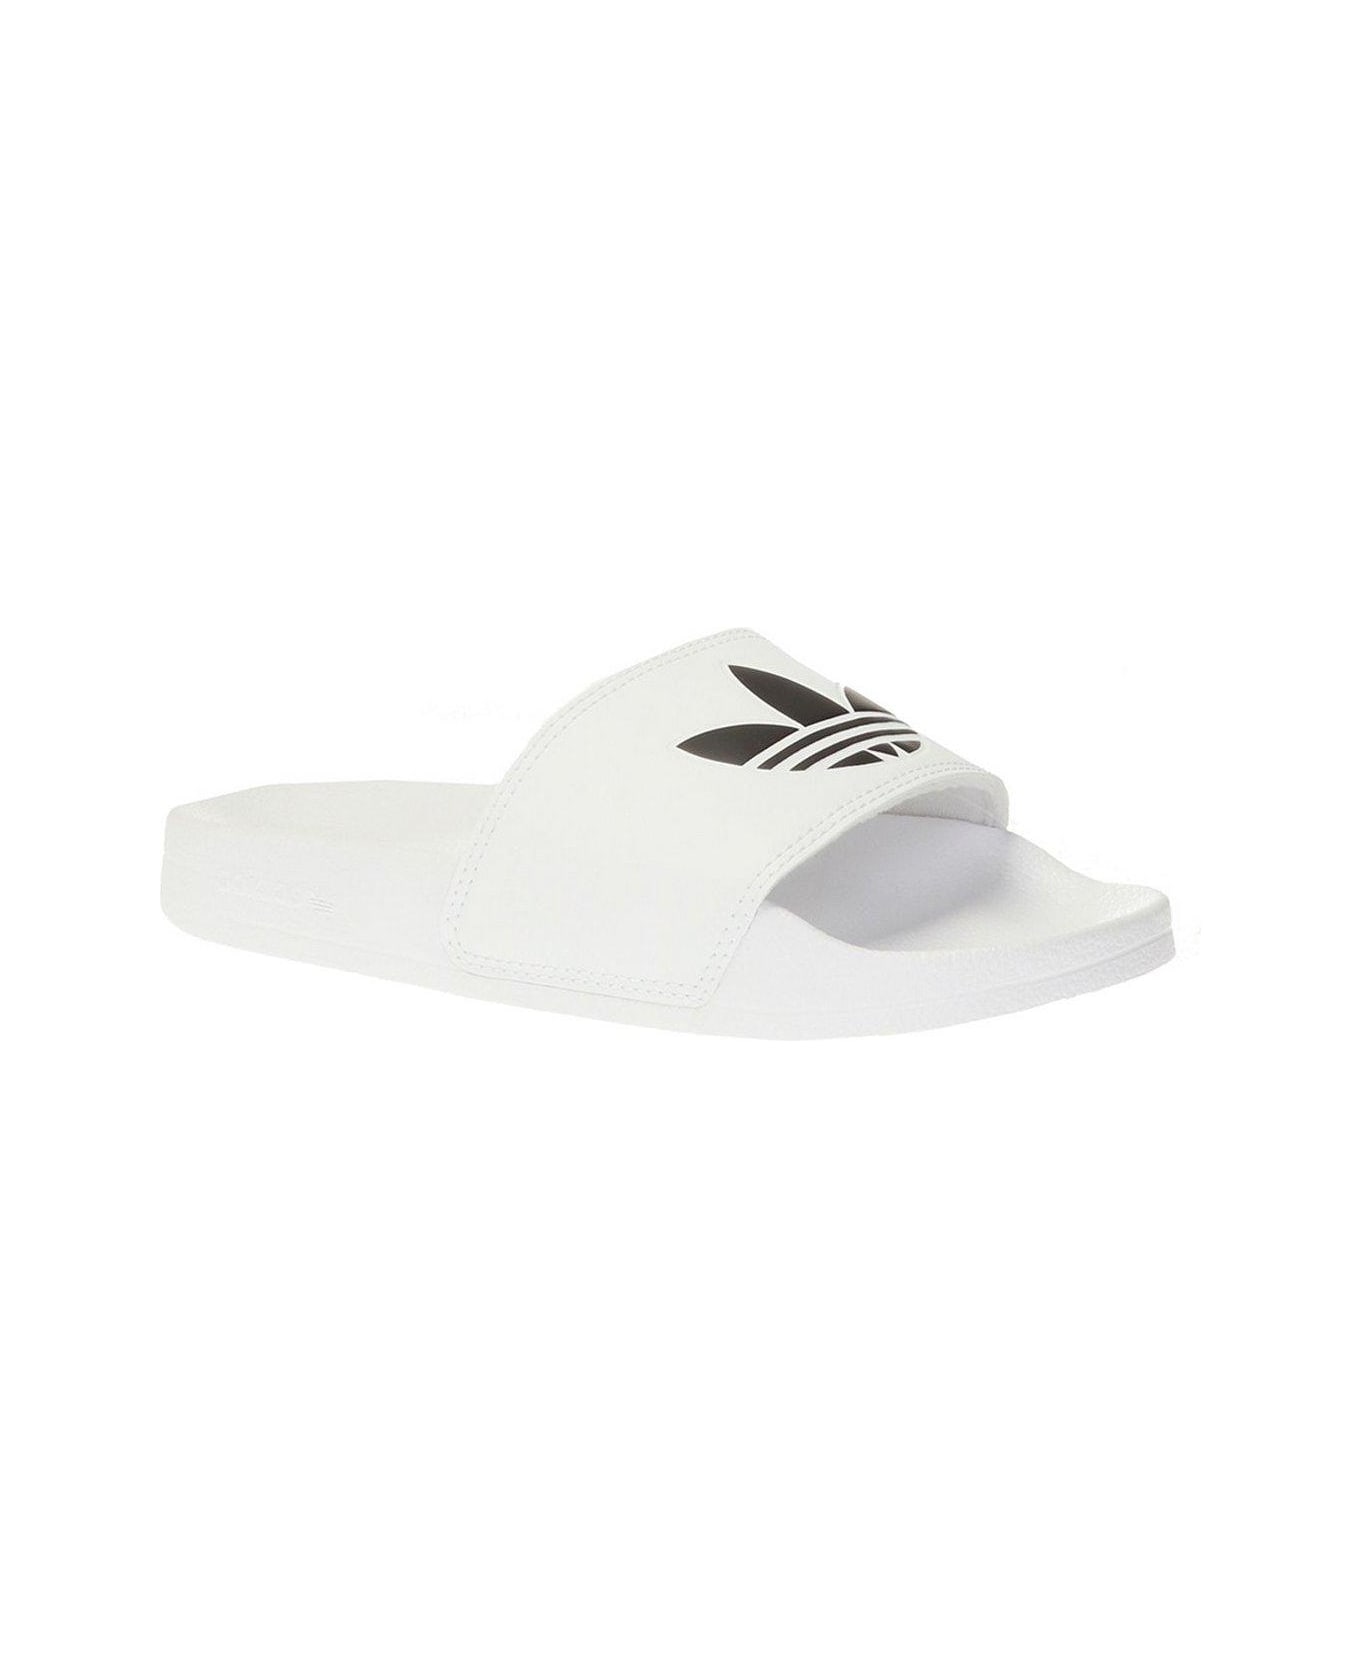 Adidas Adilette Lite Slip-on Slides フラットシューズ